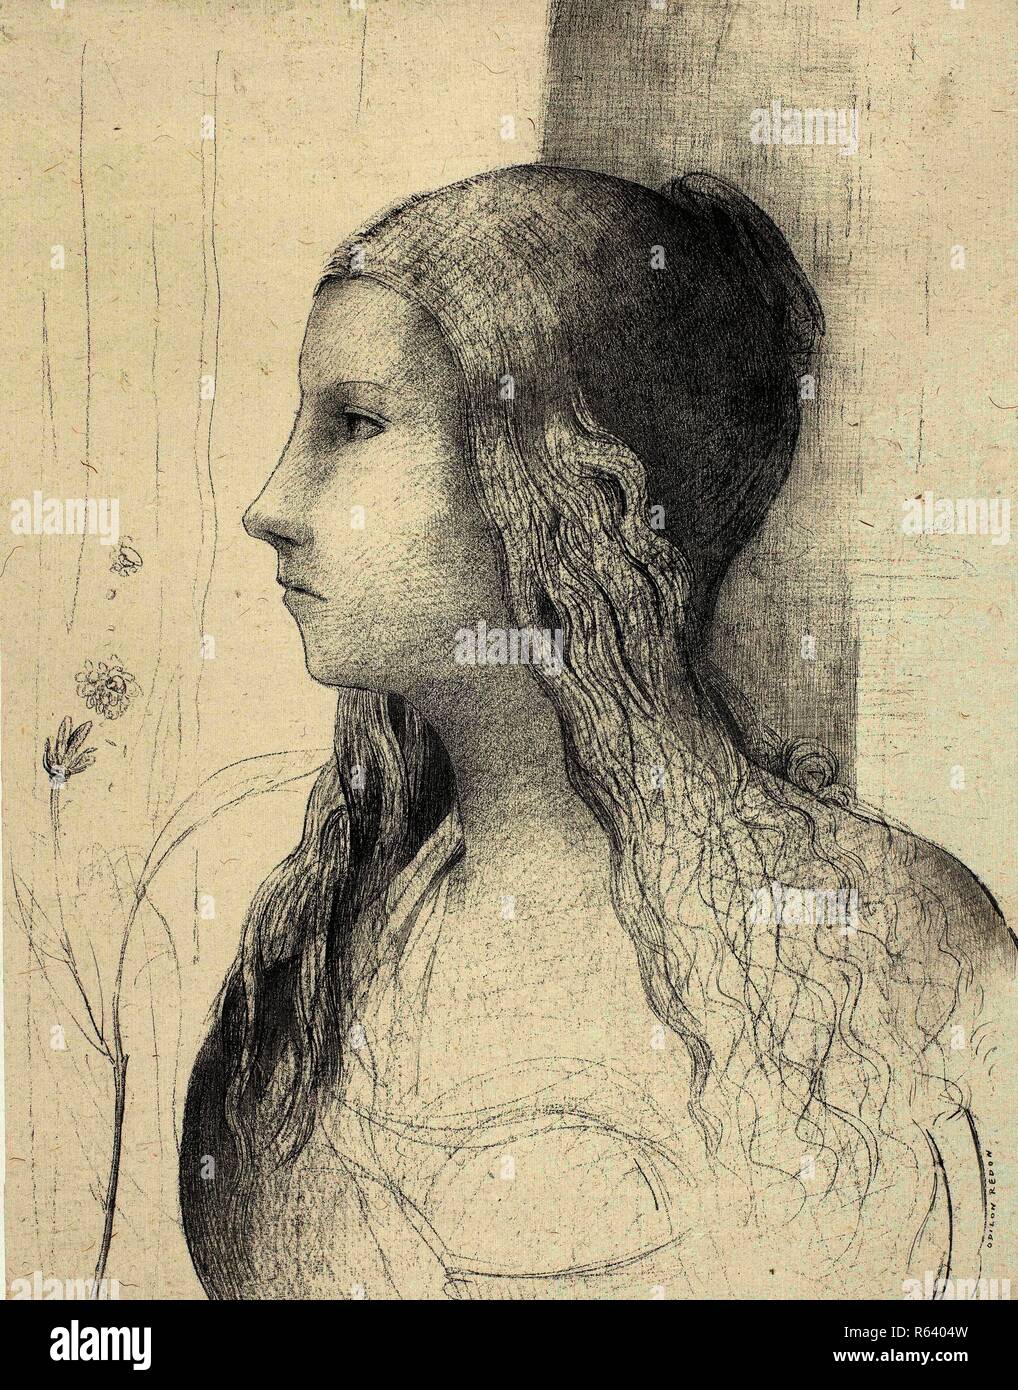 Brünnhilde in Die Götterdämmerung by Wagner (Brünnhilde, crépuscule des dieux). Dimensions: 60 cm x 45.2 cm, 37.8 cm x 29.6 cm, 37.8 cm x 29.6 cm. Museum: Van Gogh Museum, Amsterdam. Author: REDON, ODILON. Stock Photo